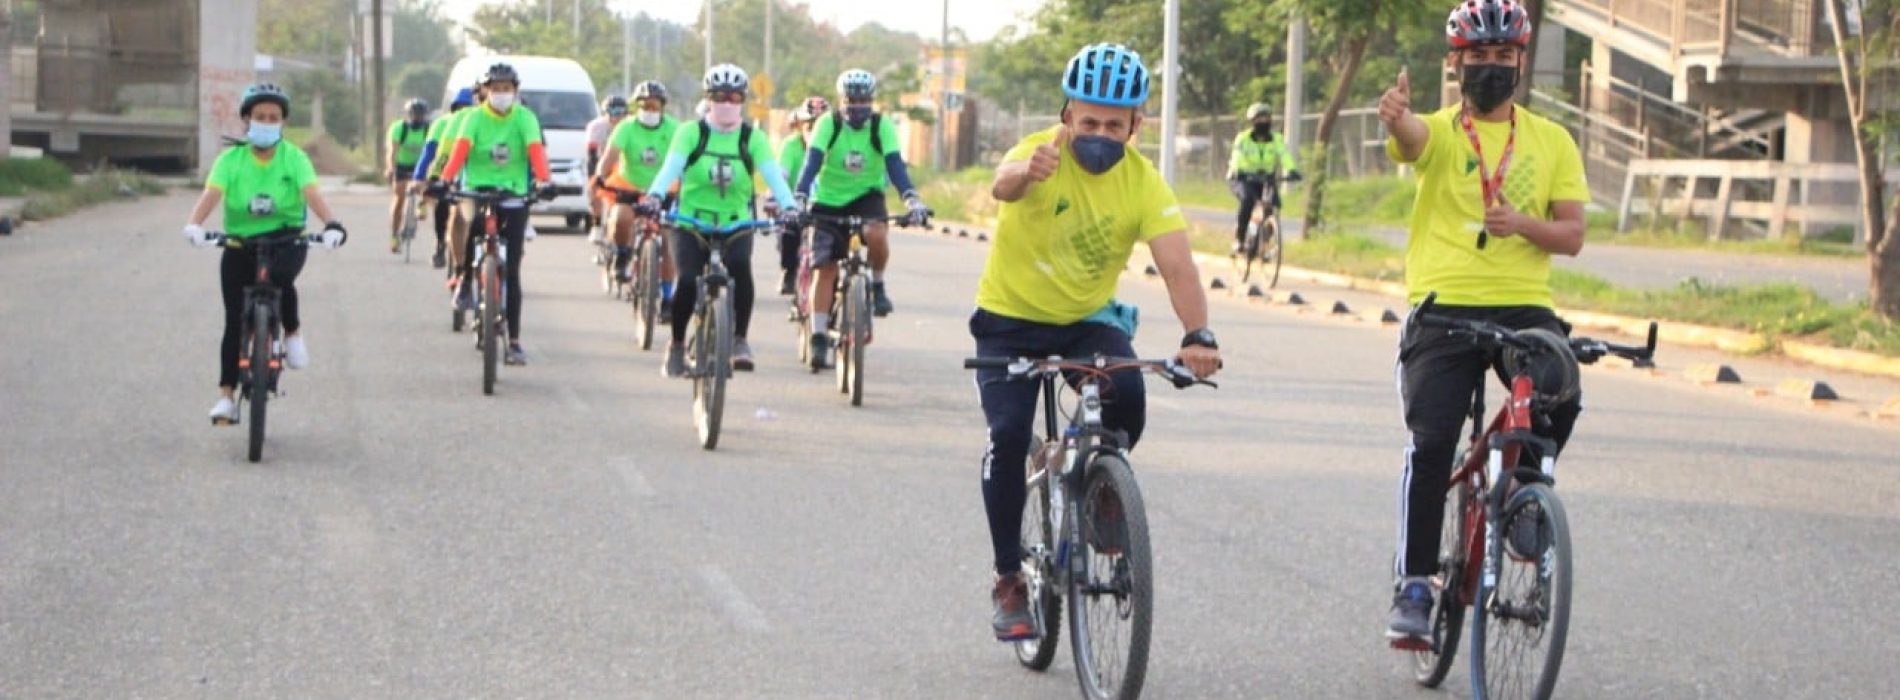 El uso de la bicicleta aporta beneficios directos a la salud y al medio ambiente